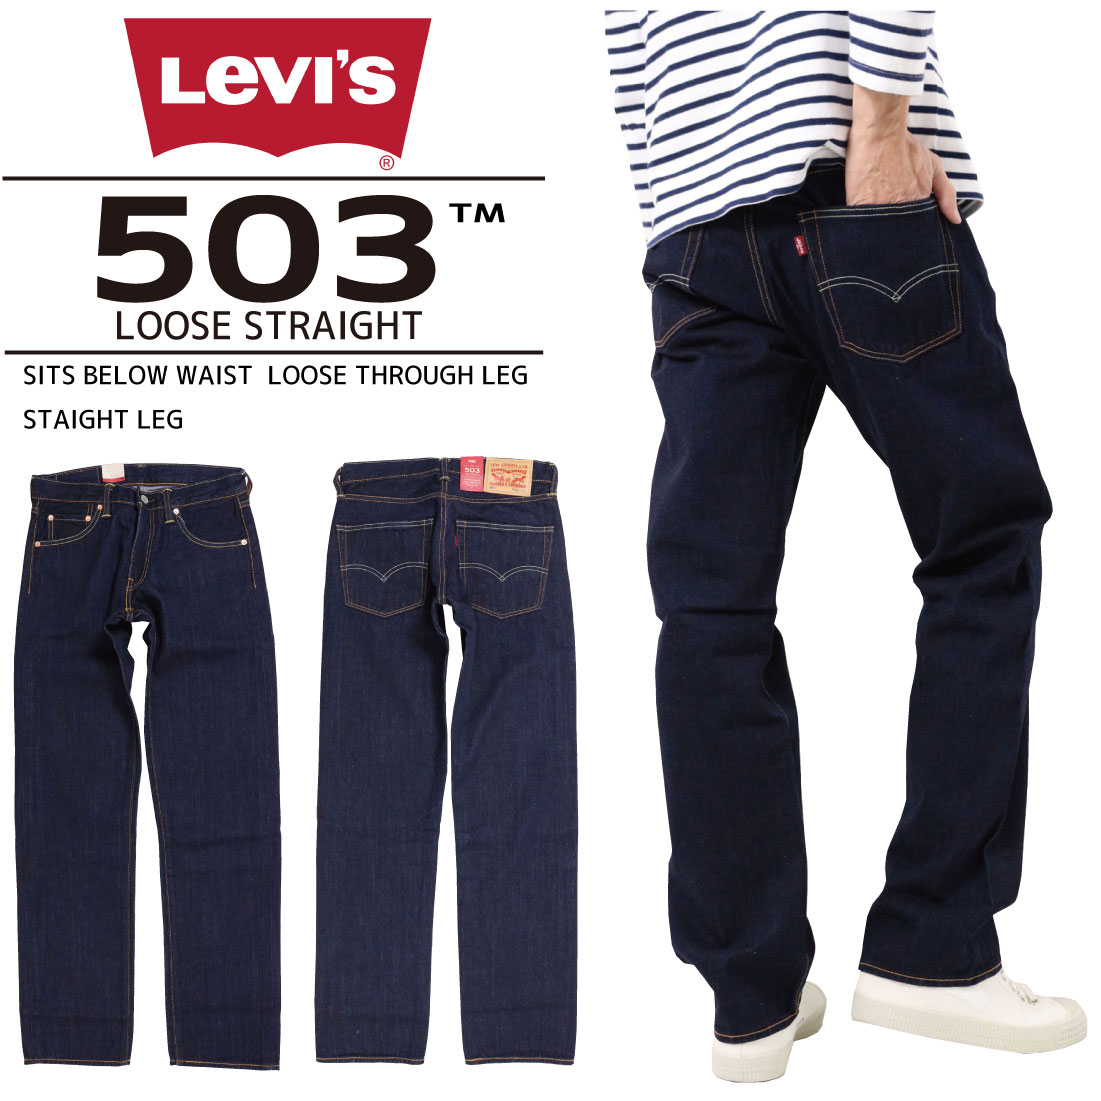 поръчка чума бегач levis 503 jeans 